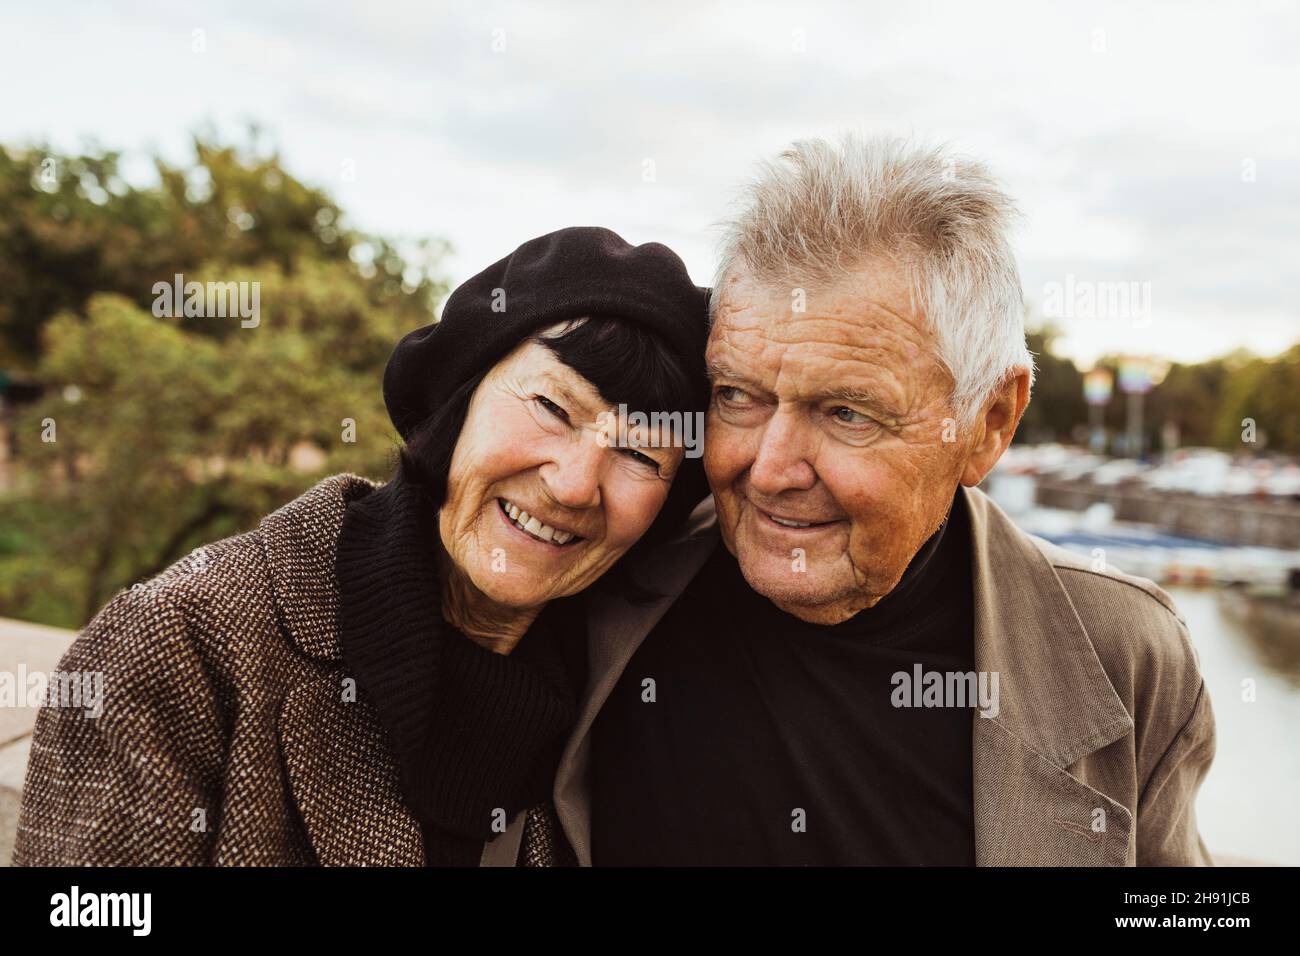 Portrait d'une femme âgée souriante avec un homme pendant les vacances Banque D'Images